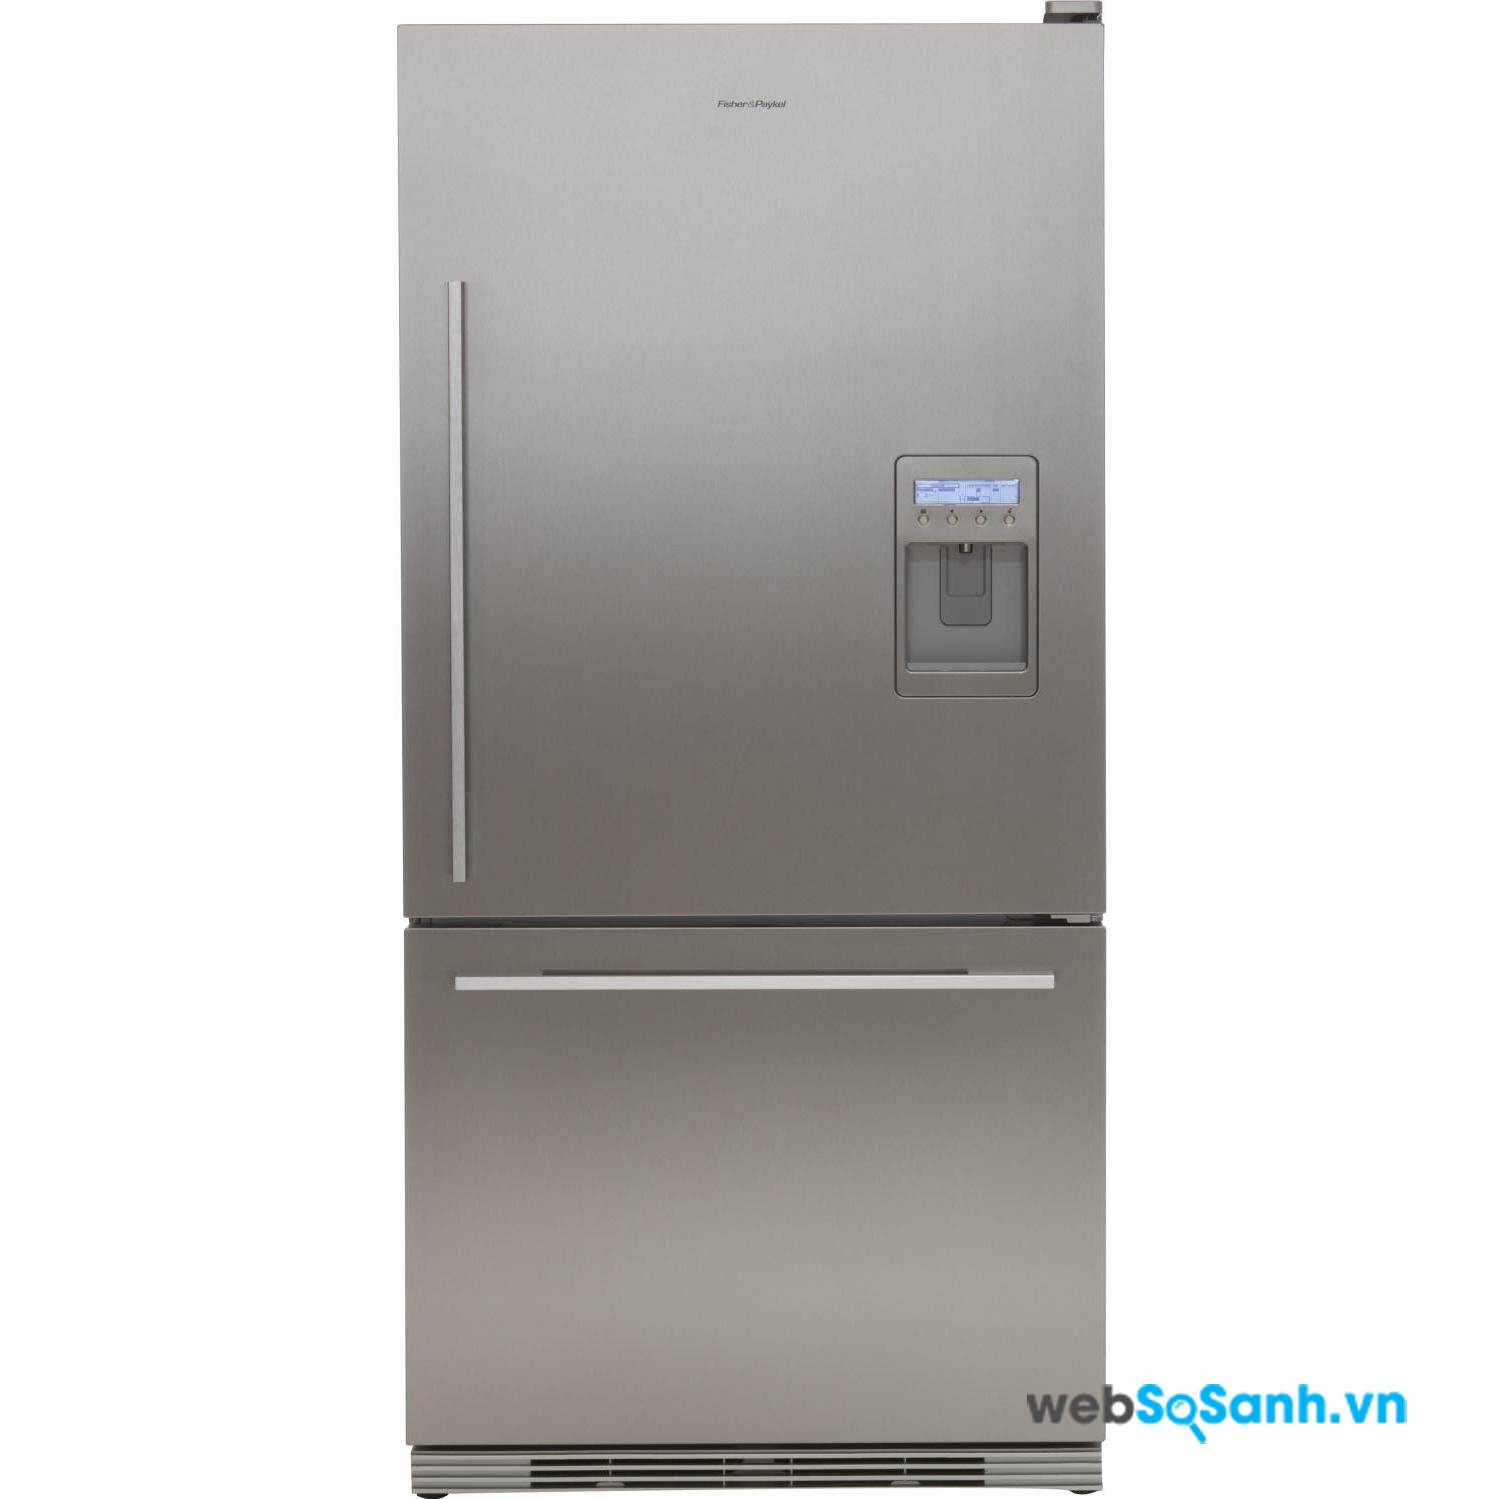 Tủ lạnh có ngăn đá nằm dưới cùng có khả năng làm đá tốt hơn với việc chứa nhiều thực phẩm đông lạnh hơn các loại tủ lạnh khác